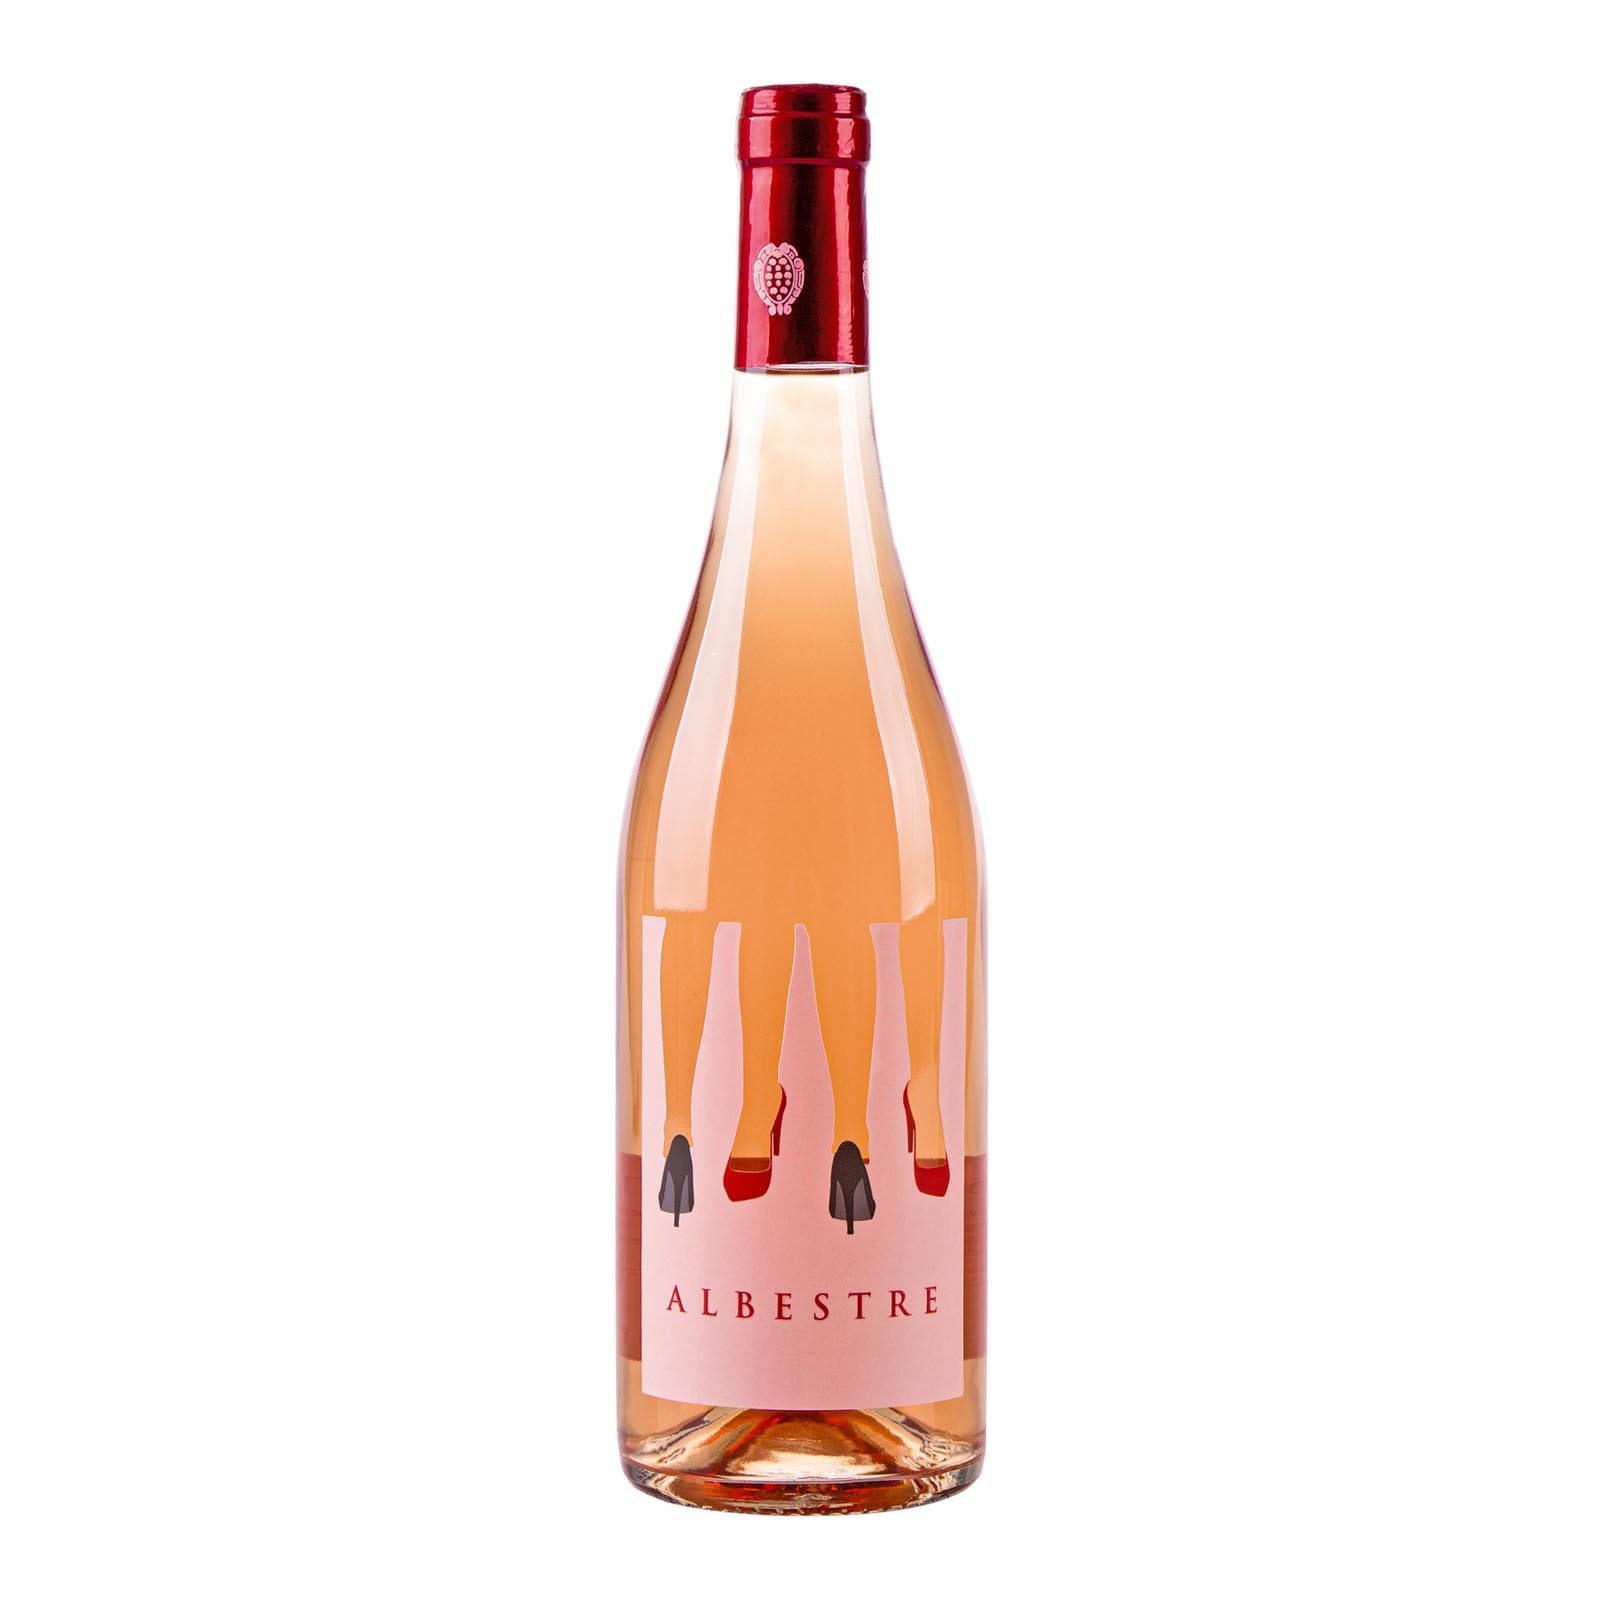 „Albestre” von Buccelletti ist ein zarter Roséwein mit einem sanften Aroma frischer Kirschen, der aus einer Aderlass-Mischung aus Sangiovese- und Syrah-Trauben aus der ersten Pressung gewonnen wird.